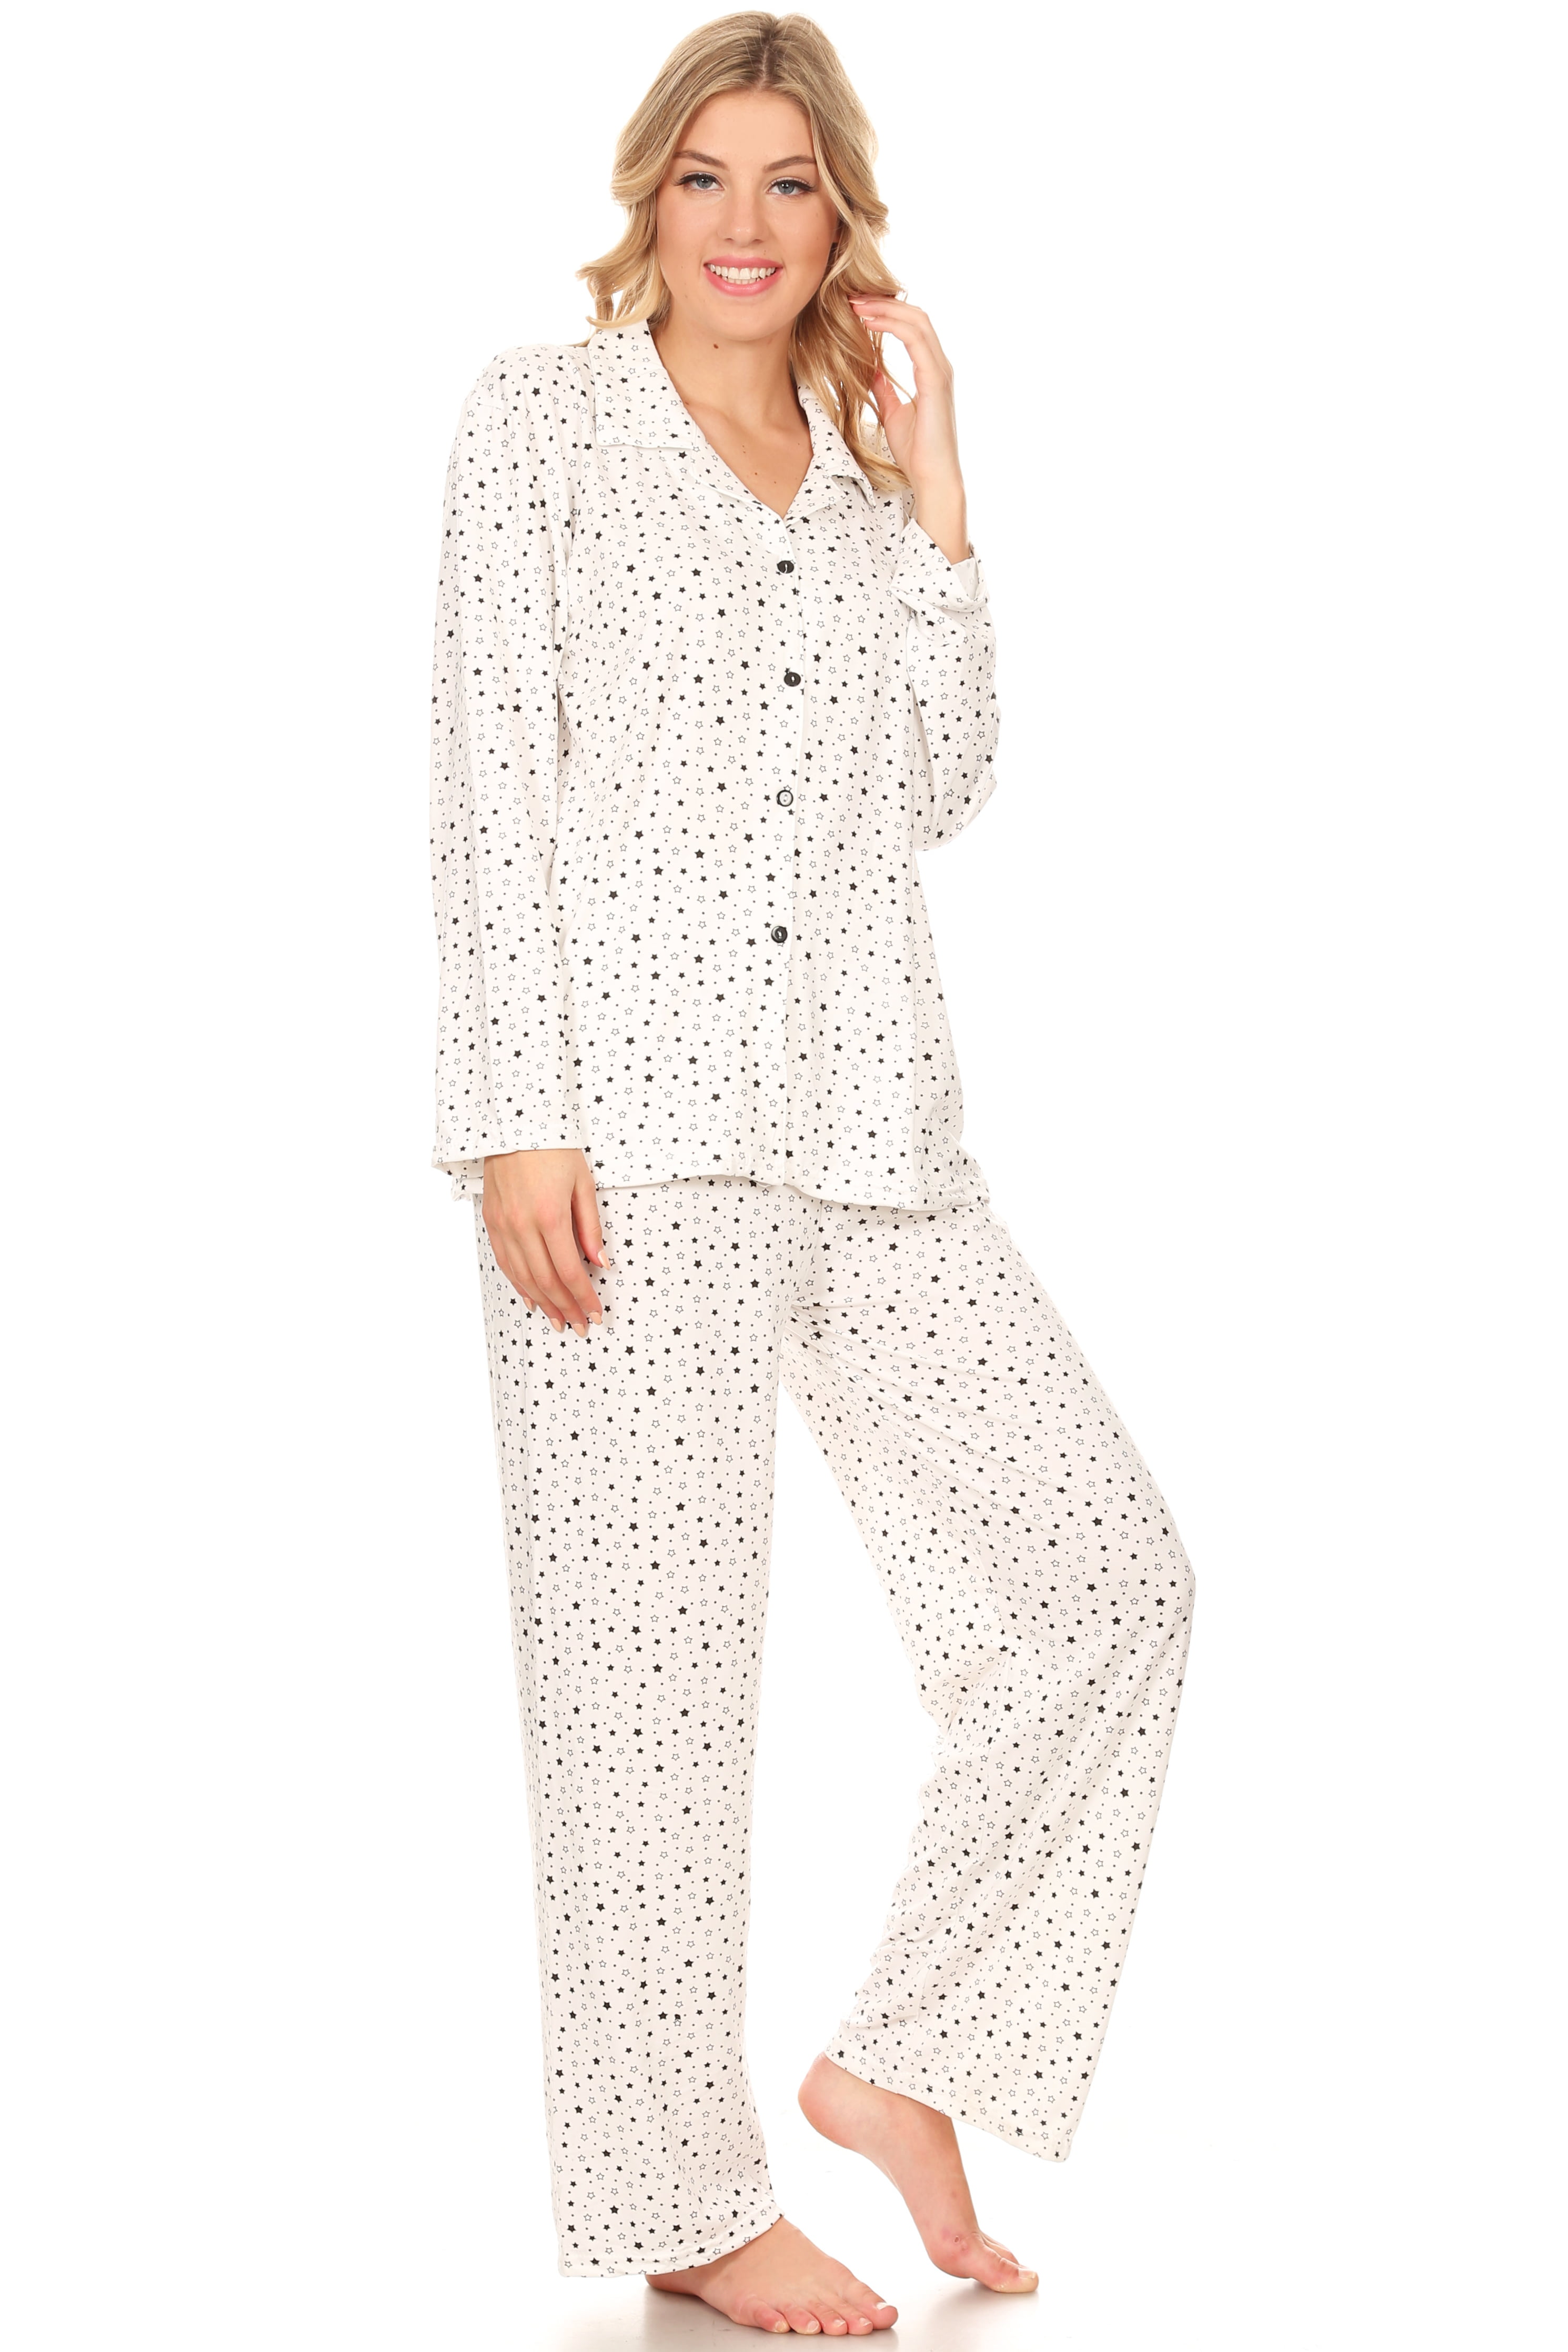 Z2151 Womens Sleepwear Pajamas Woman Long Sleeve Button Down set White ...